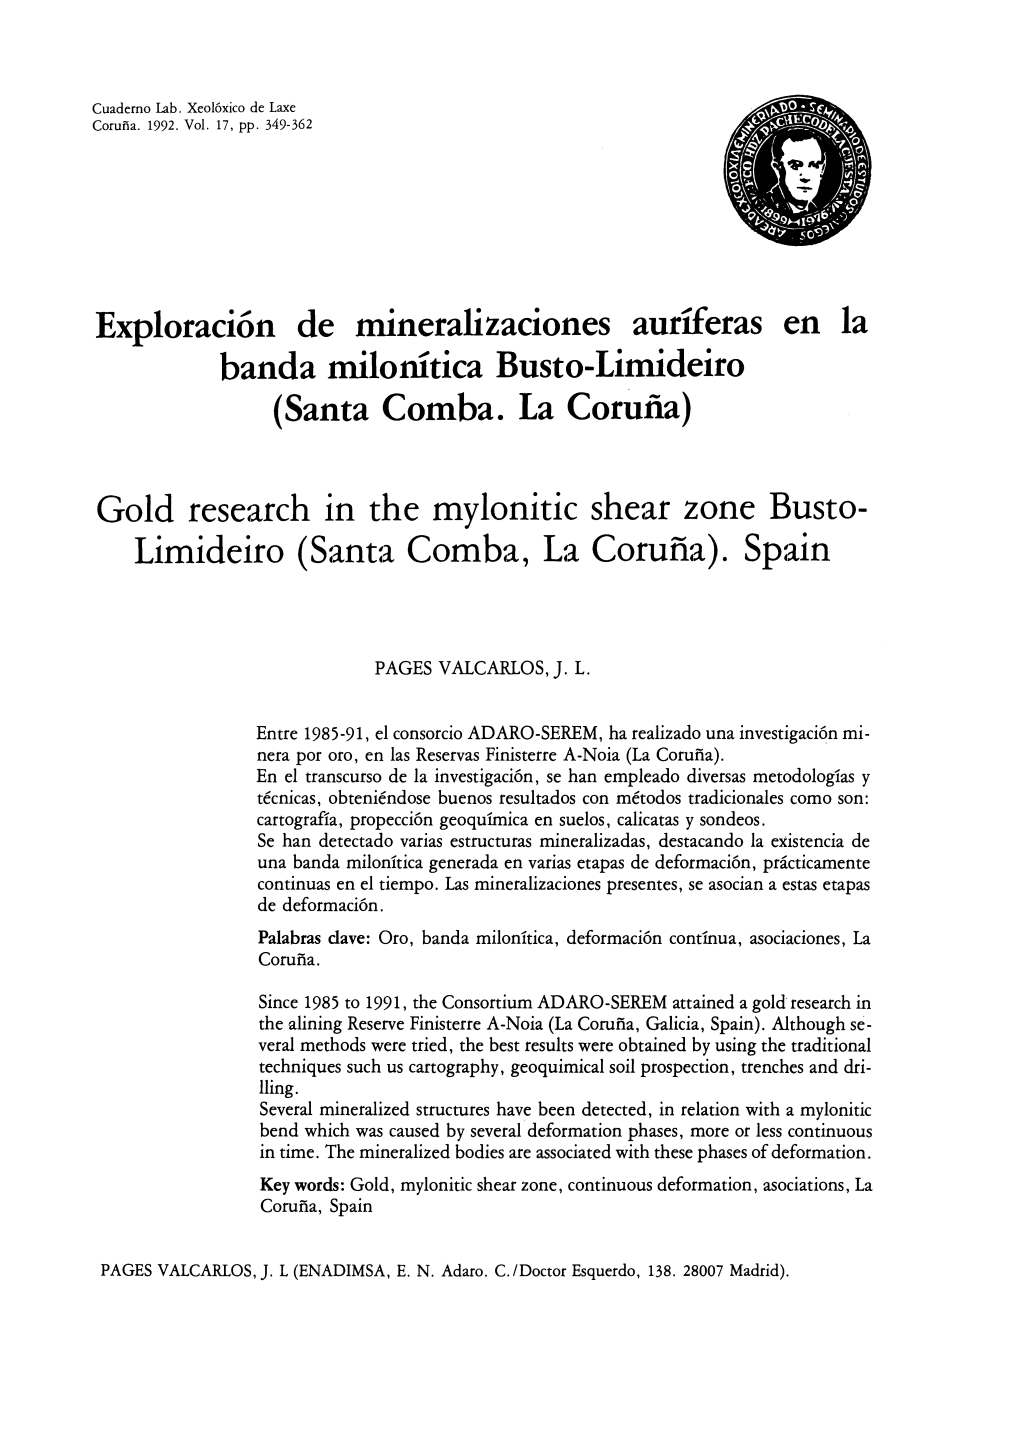 Exploración De Mineralizaciones Auríferas En La Banda Milonítica Busto-Limideiro (Santa Comba